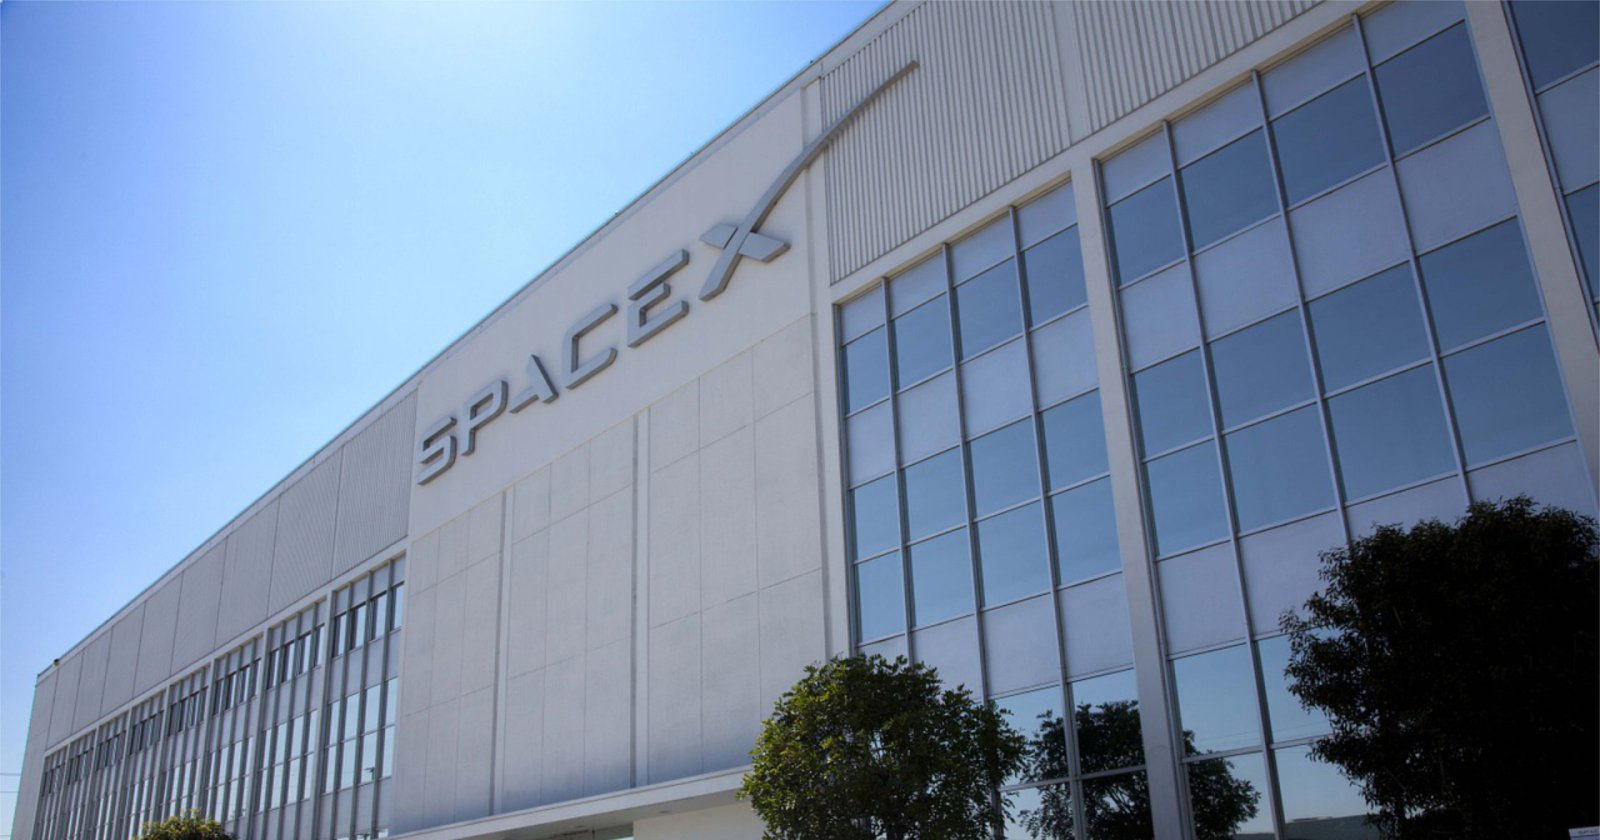 SpaceX ย้ายที่อยู่บริษัทจดทะเบียนจากเดลาแวร์ไปเป็นเท็กซัส